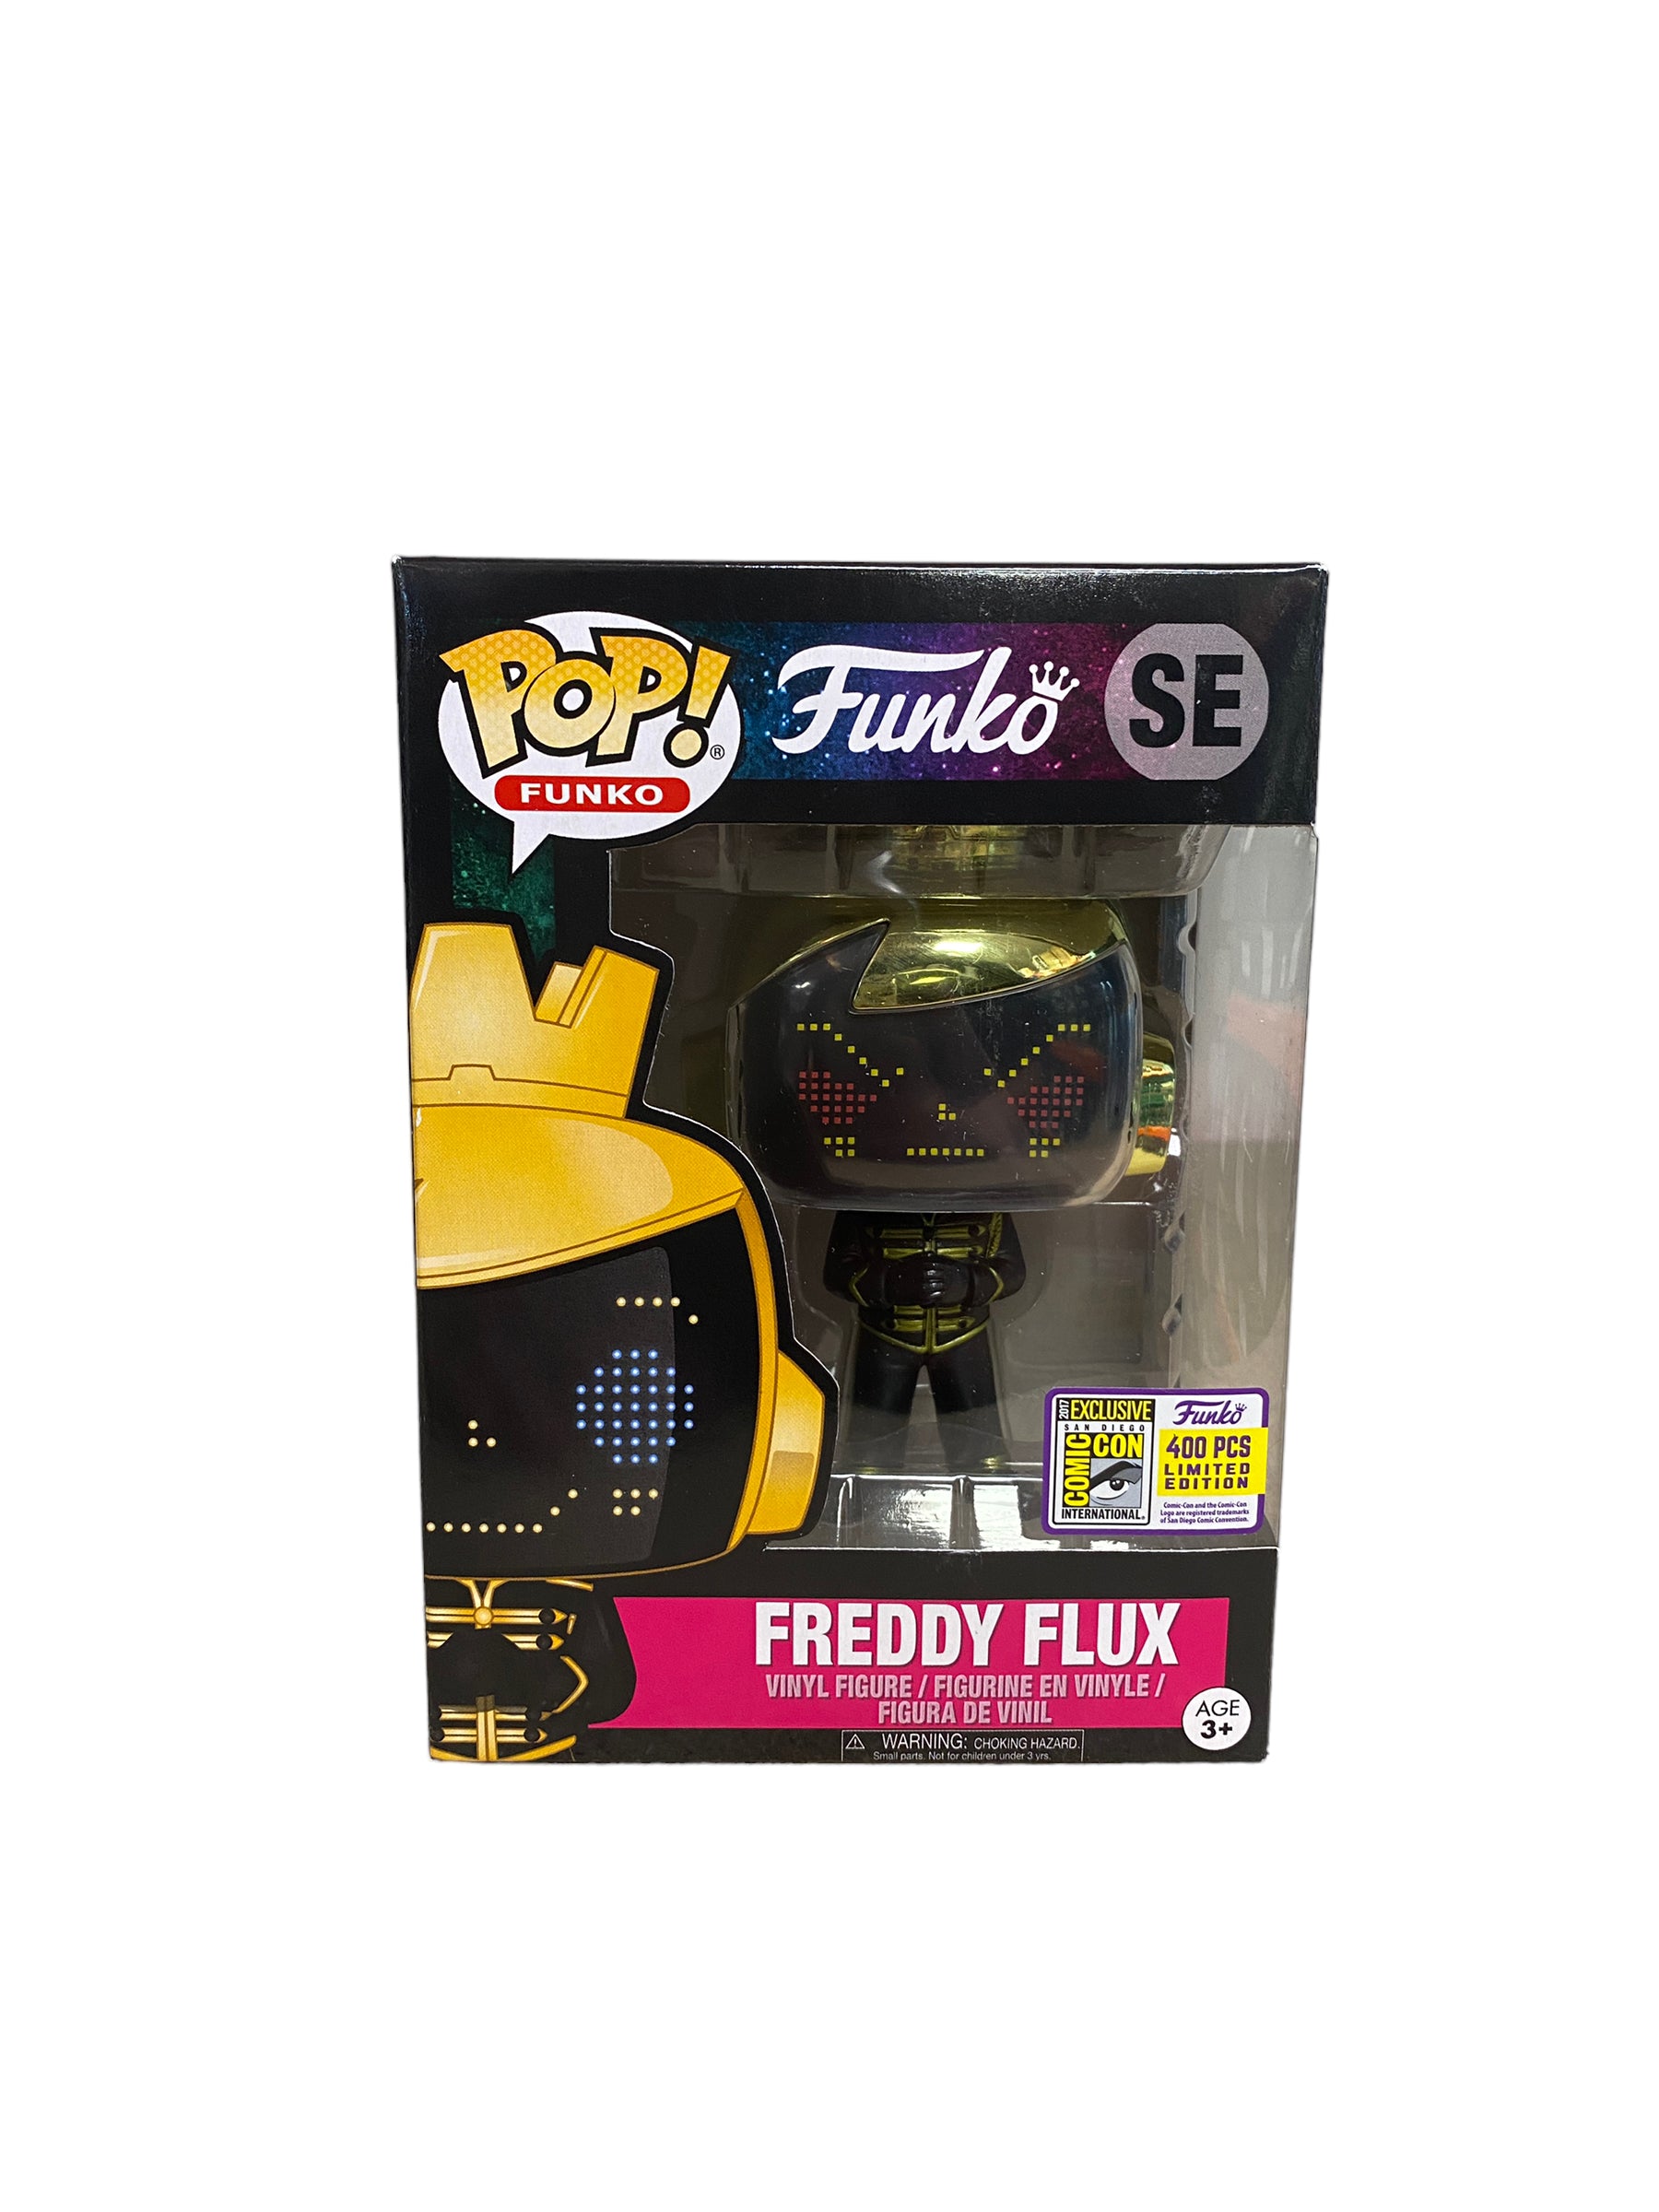 Freddy Flux Zenith Funko Pop! - SDCC 2017 Exclusive LE400 Pcs - Condition 8.75/10